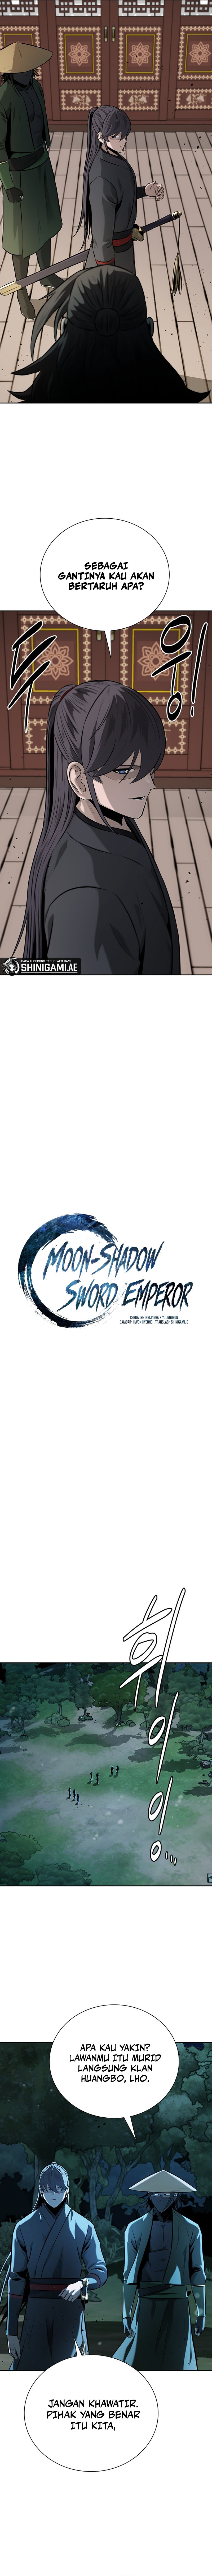 moon-shadow-sword-emperor Chapter 60